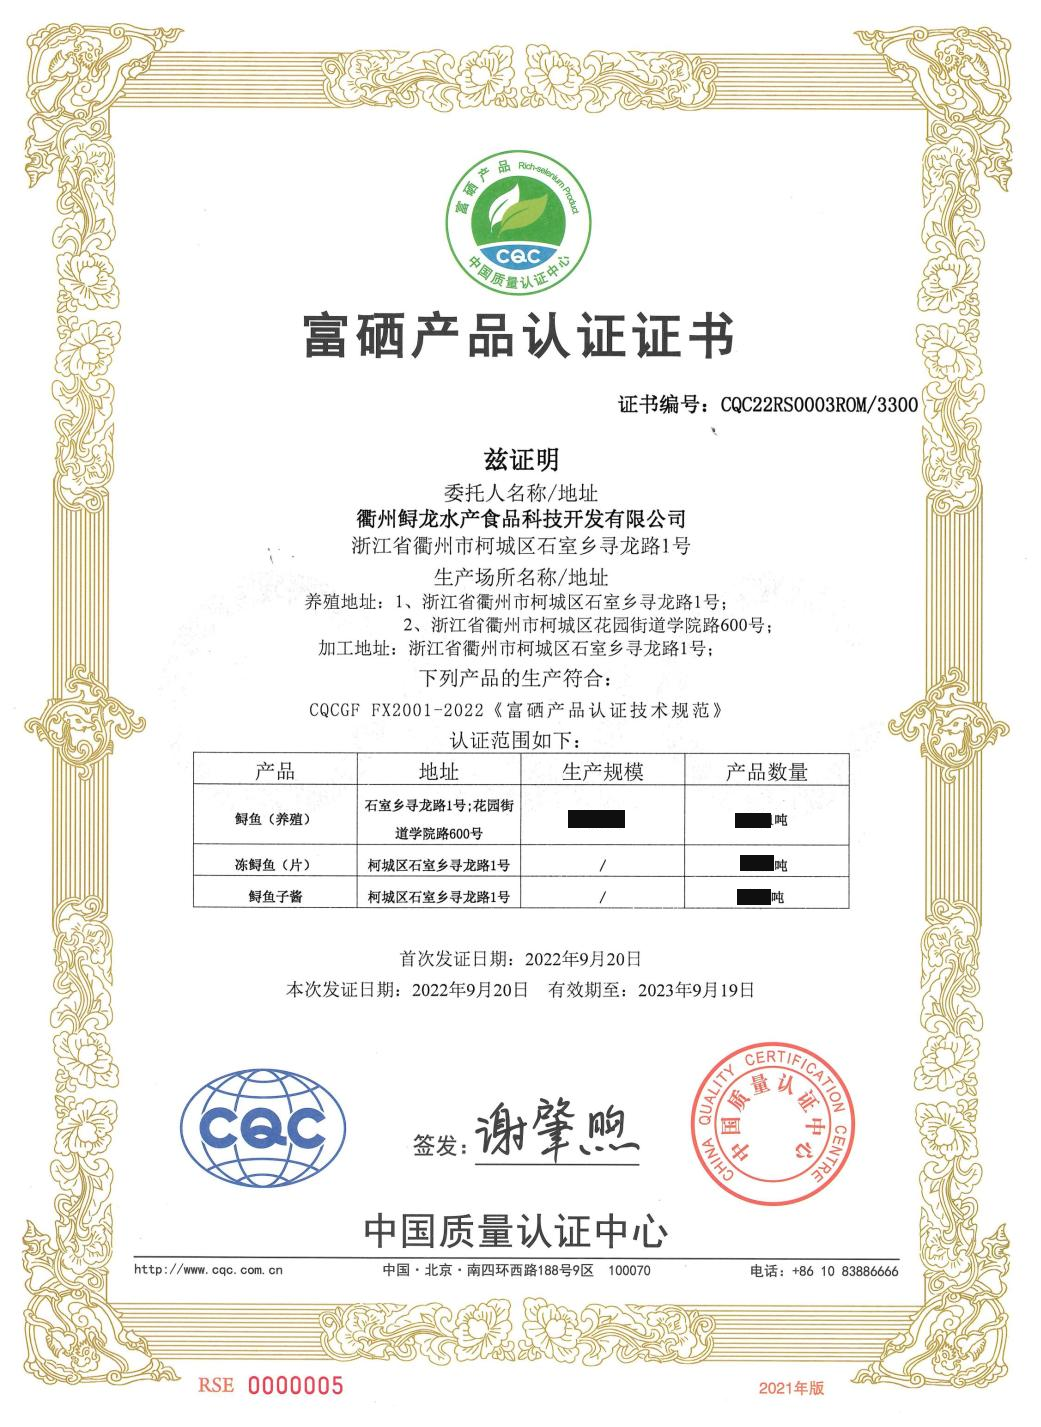 富硒产品认证证书（中文）-衢州鲟龙-有效期2022年9月20日-2023年9月19日_00.jpg